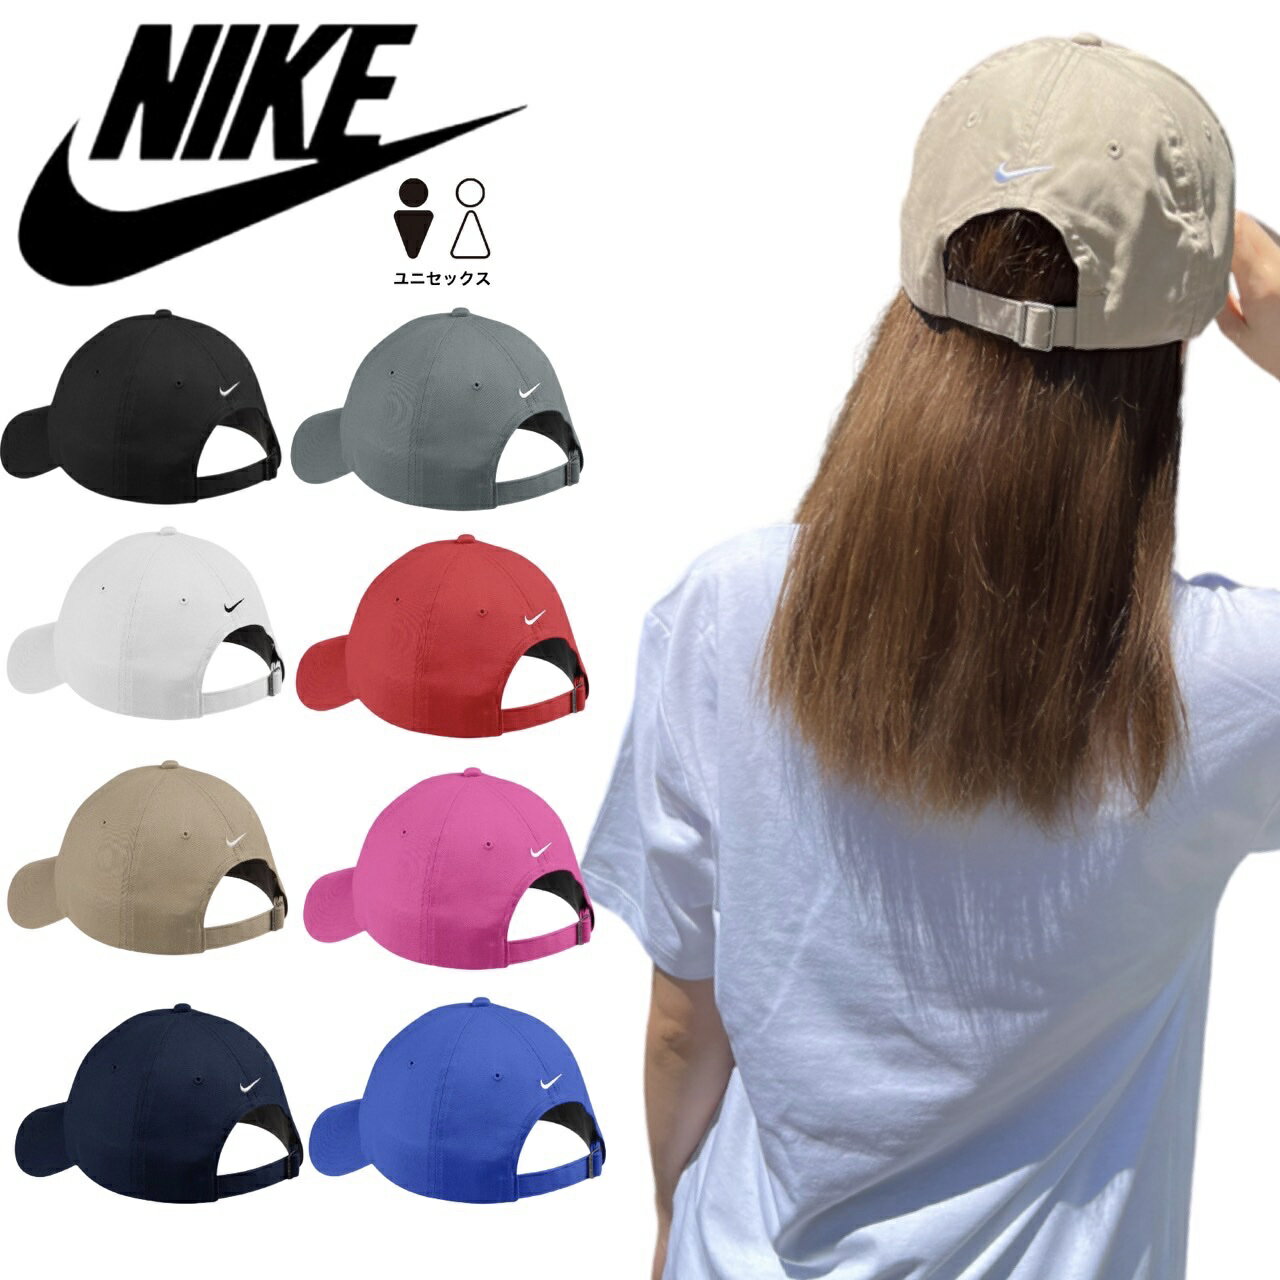 ナイキ キャップ メンズ ナイキ Nike キャップ 帽子 ゴルフ ロゴ 580087 メンズ レディース 速乾 スウッシュロゴ Dri-FIT ワンサイズ スポーツ NIKE UNSTRUCTURED TWILL CAP